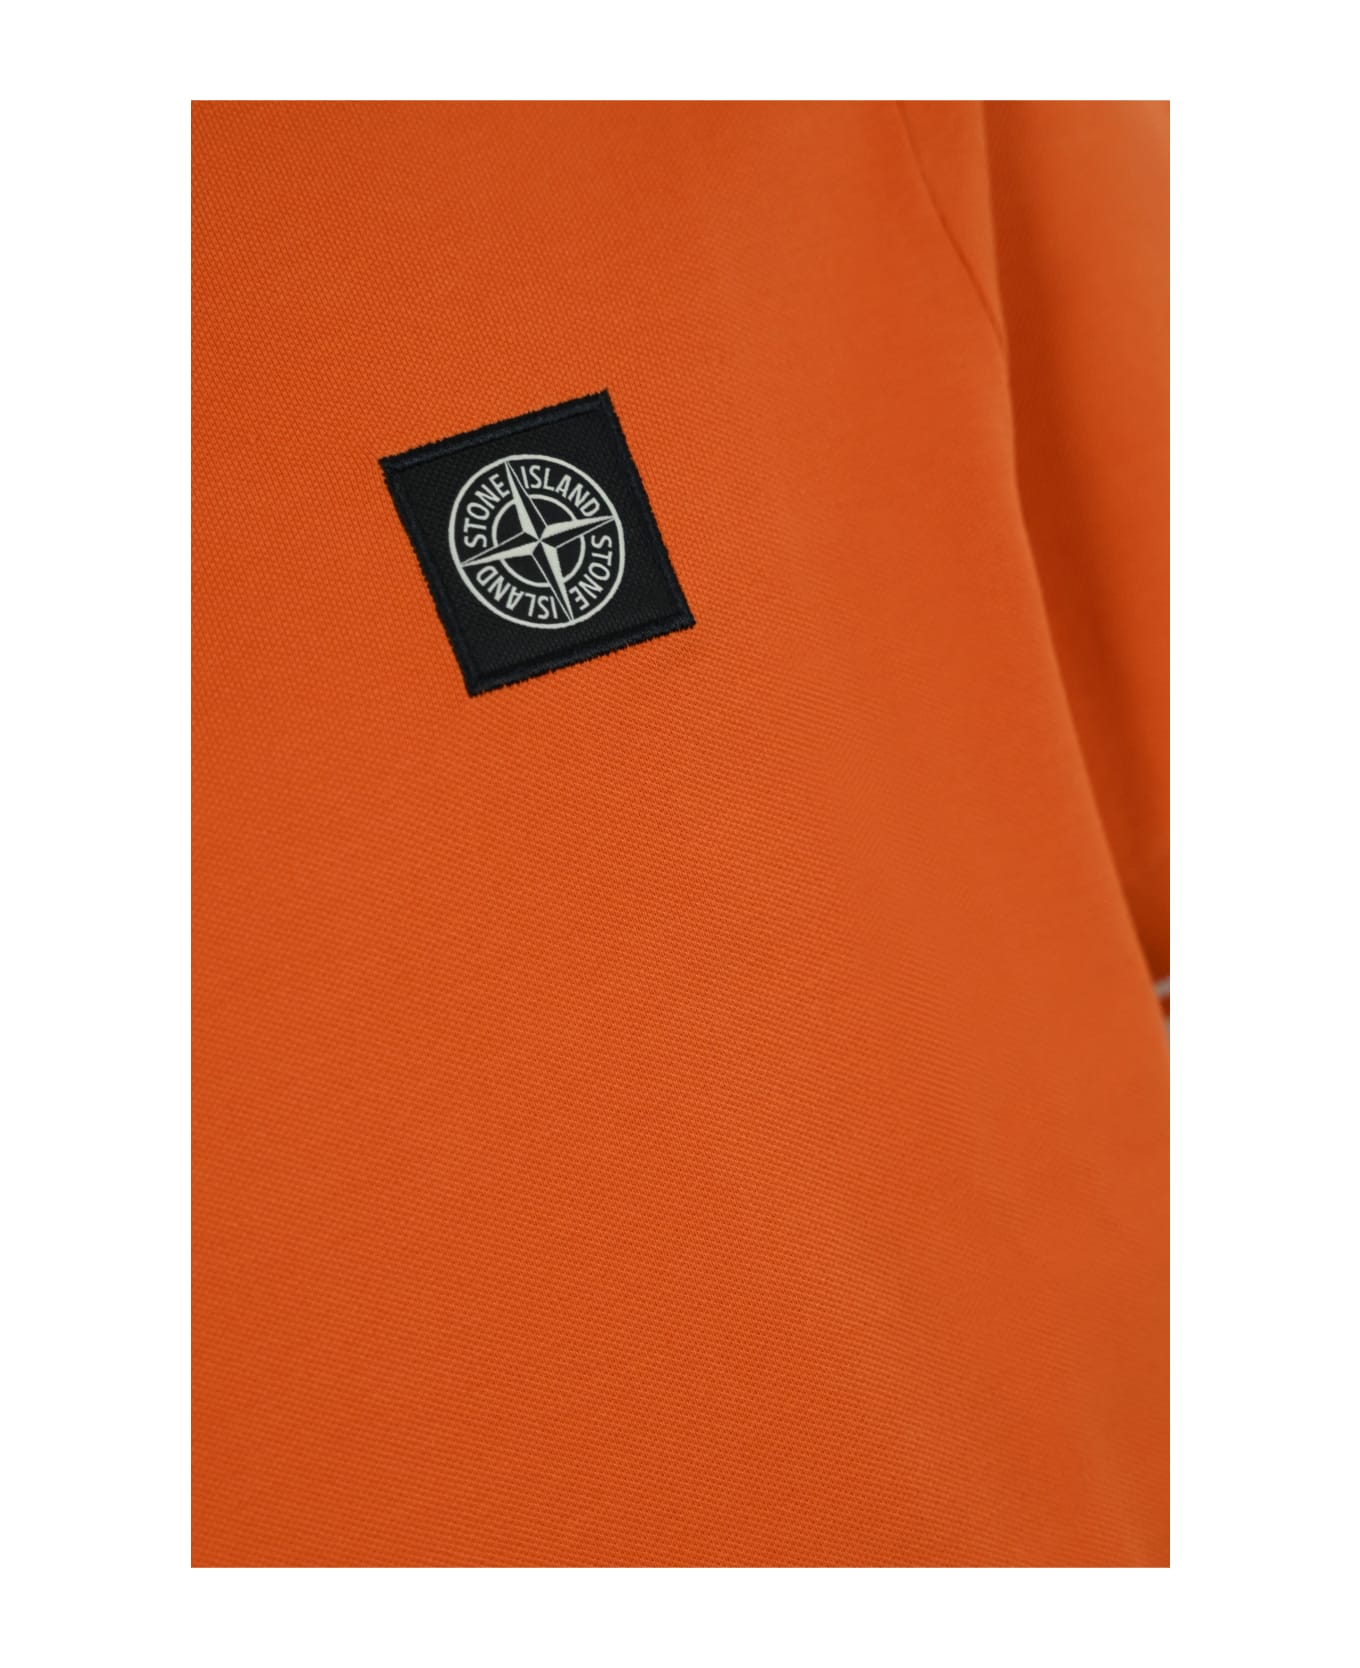 Stone Island 2sc18 Cotton Polo Shirt - Orange